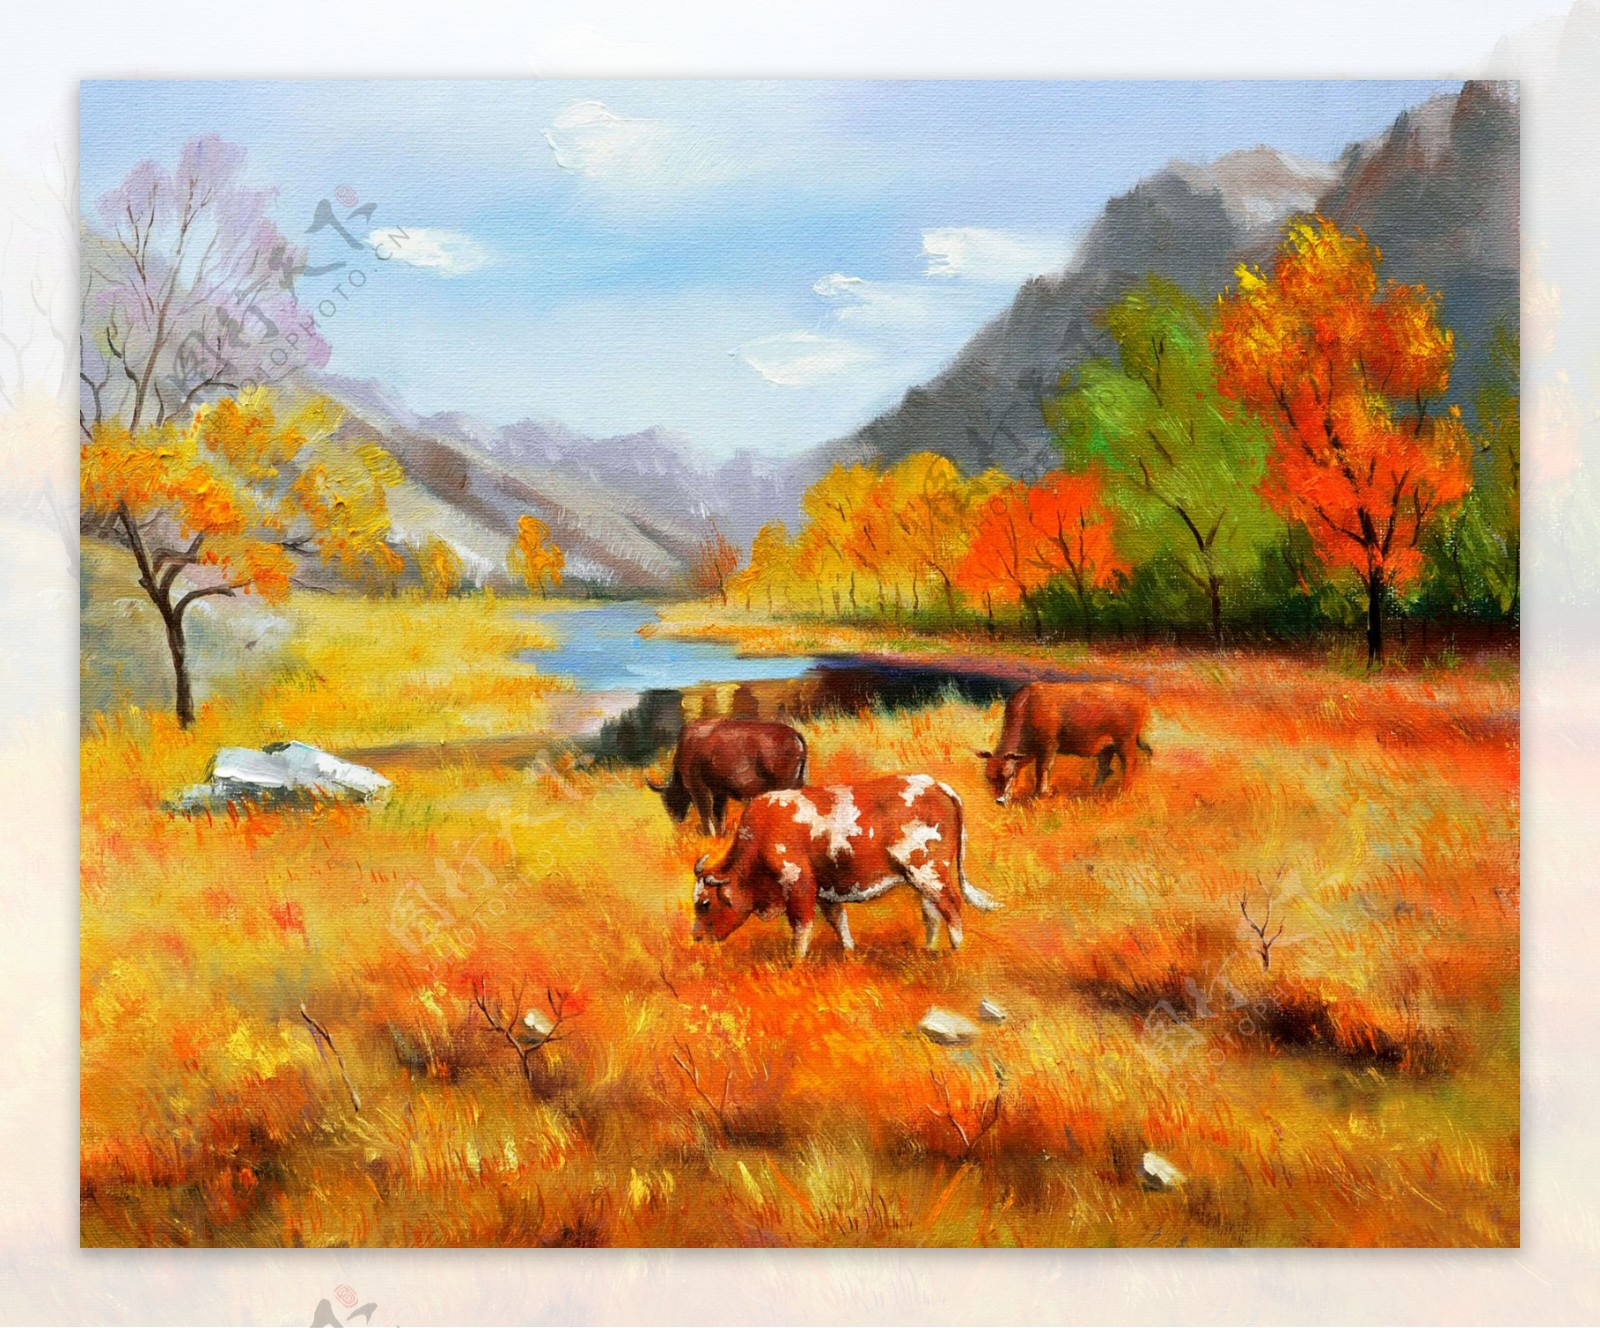 秋天牧场风景油画图片